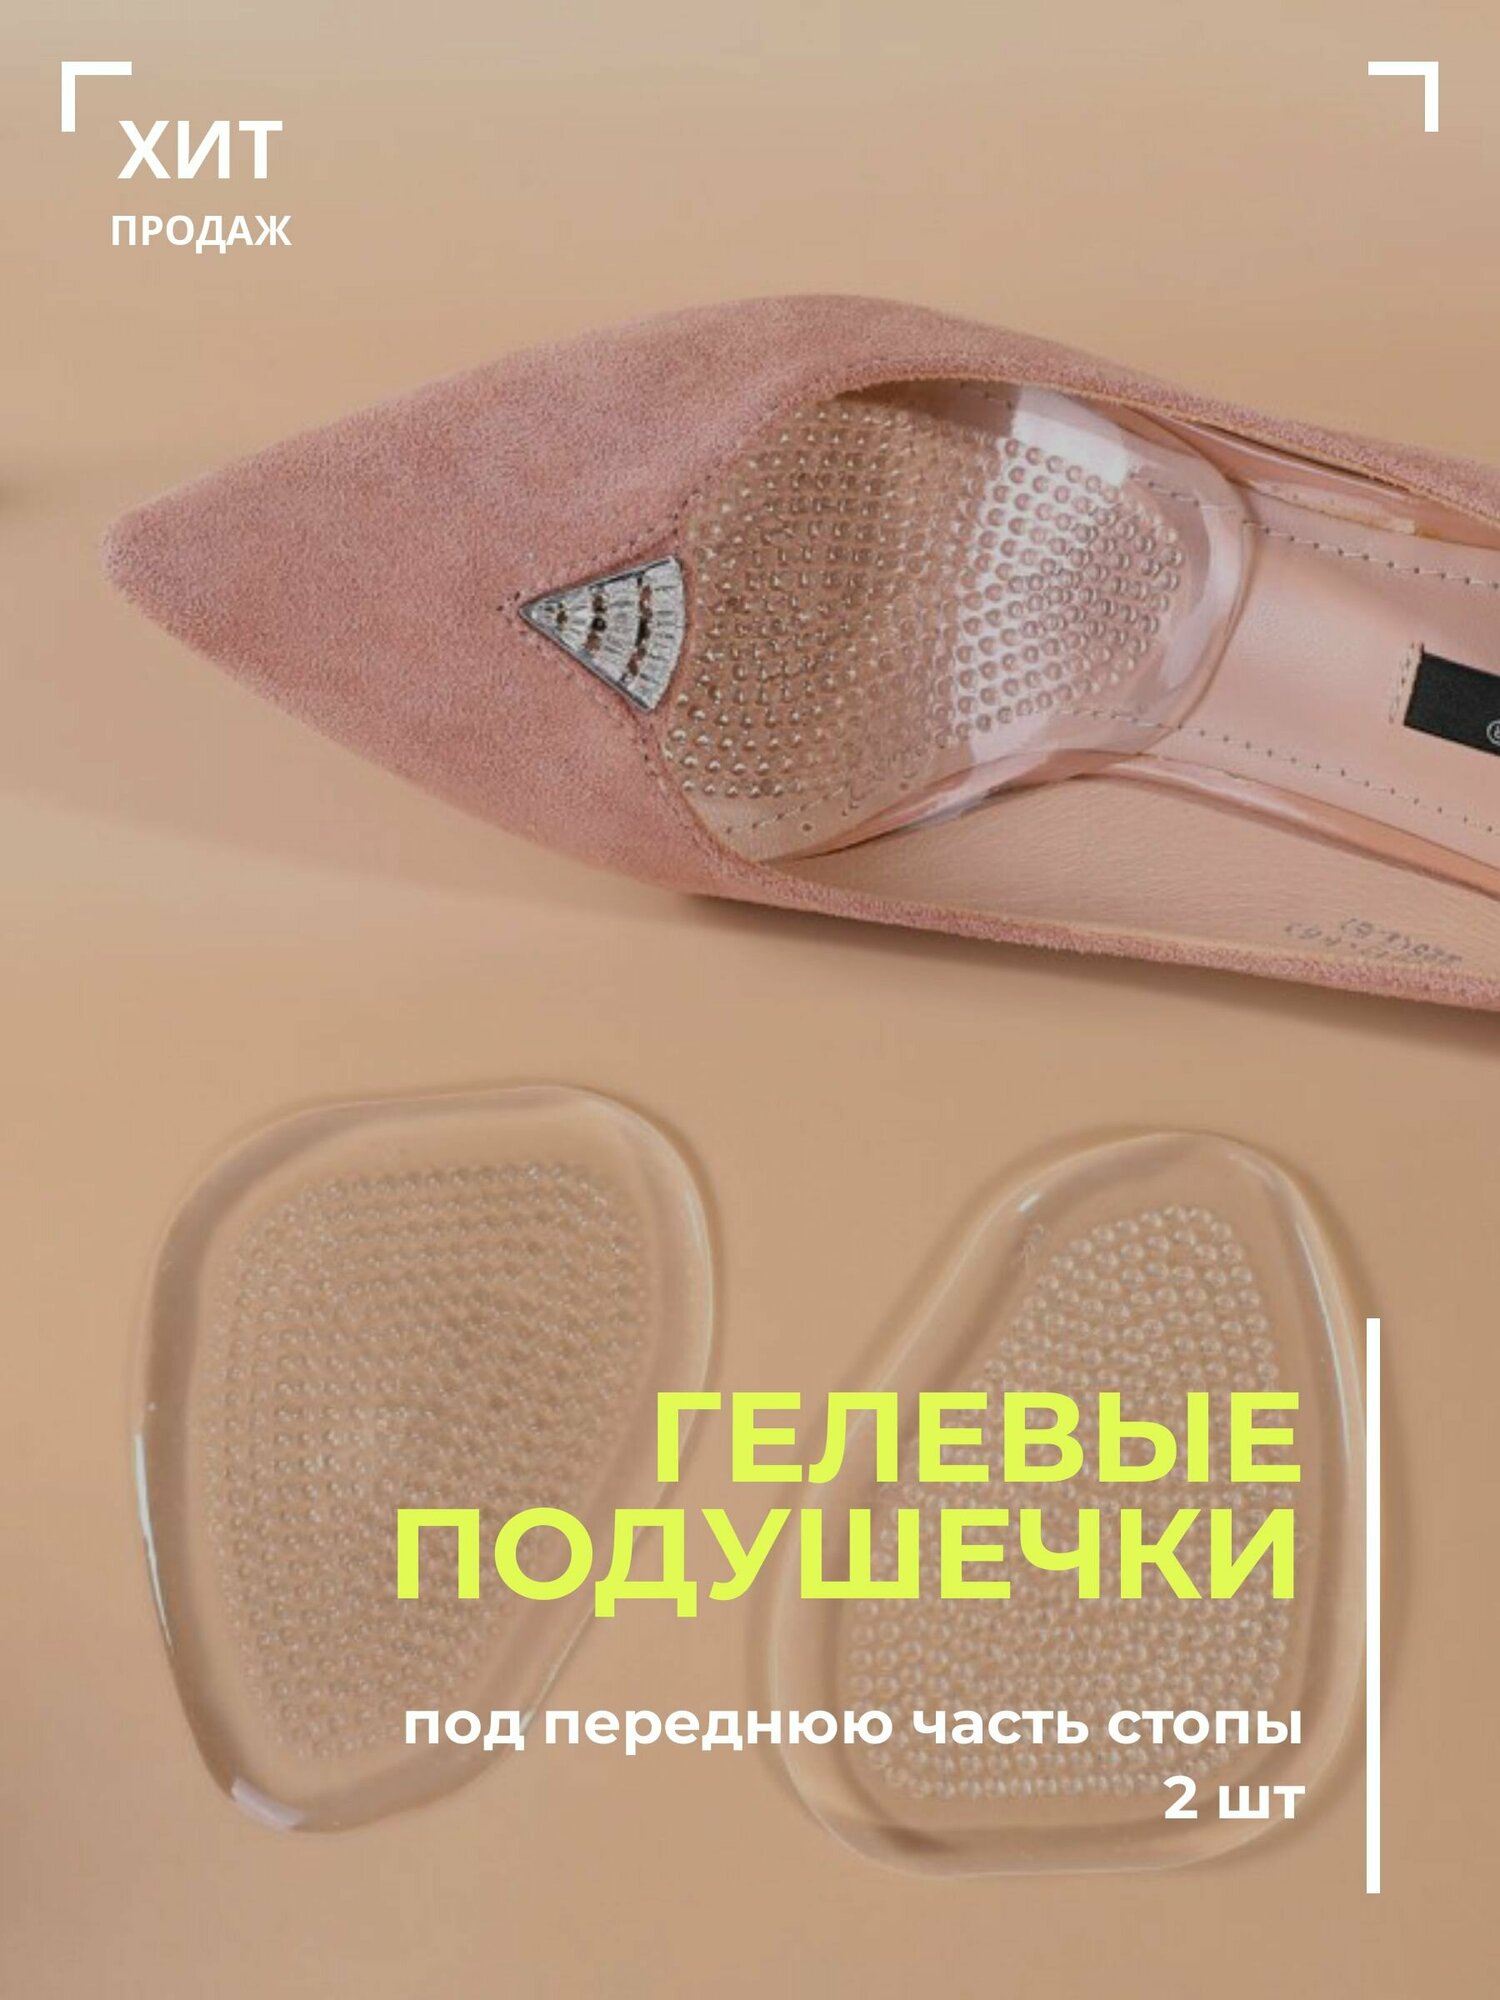 Рельефные подушечки для обуви под переднюю часть стопы